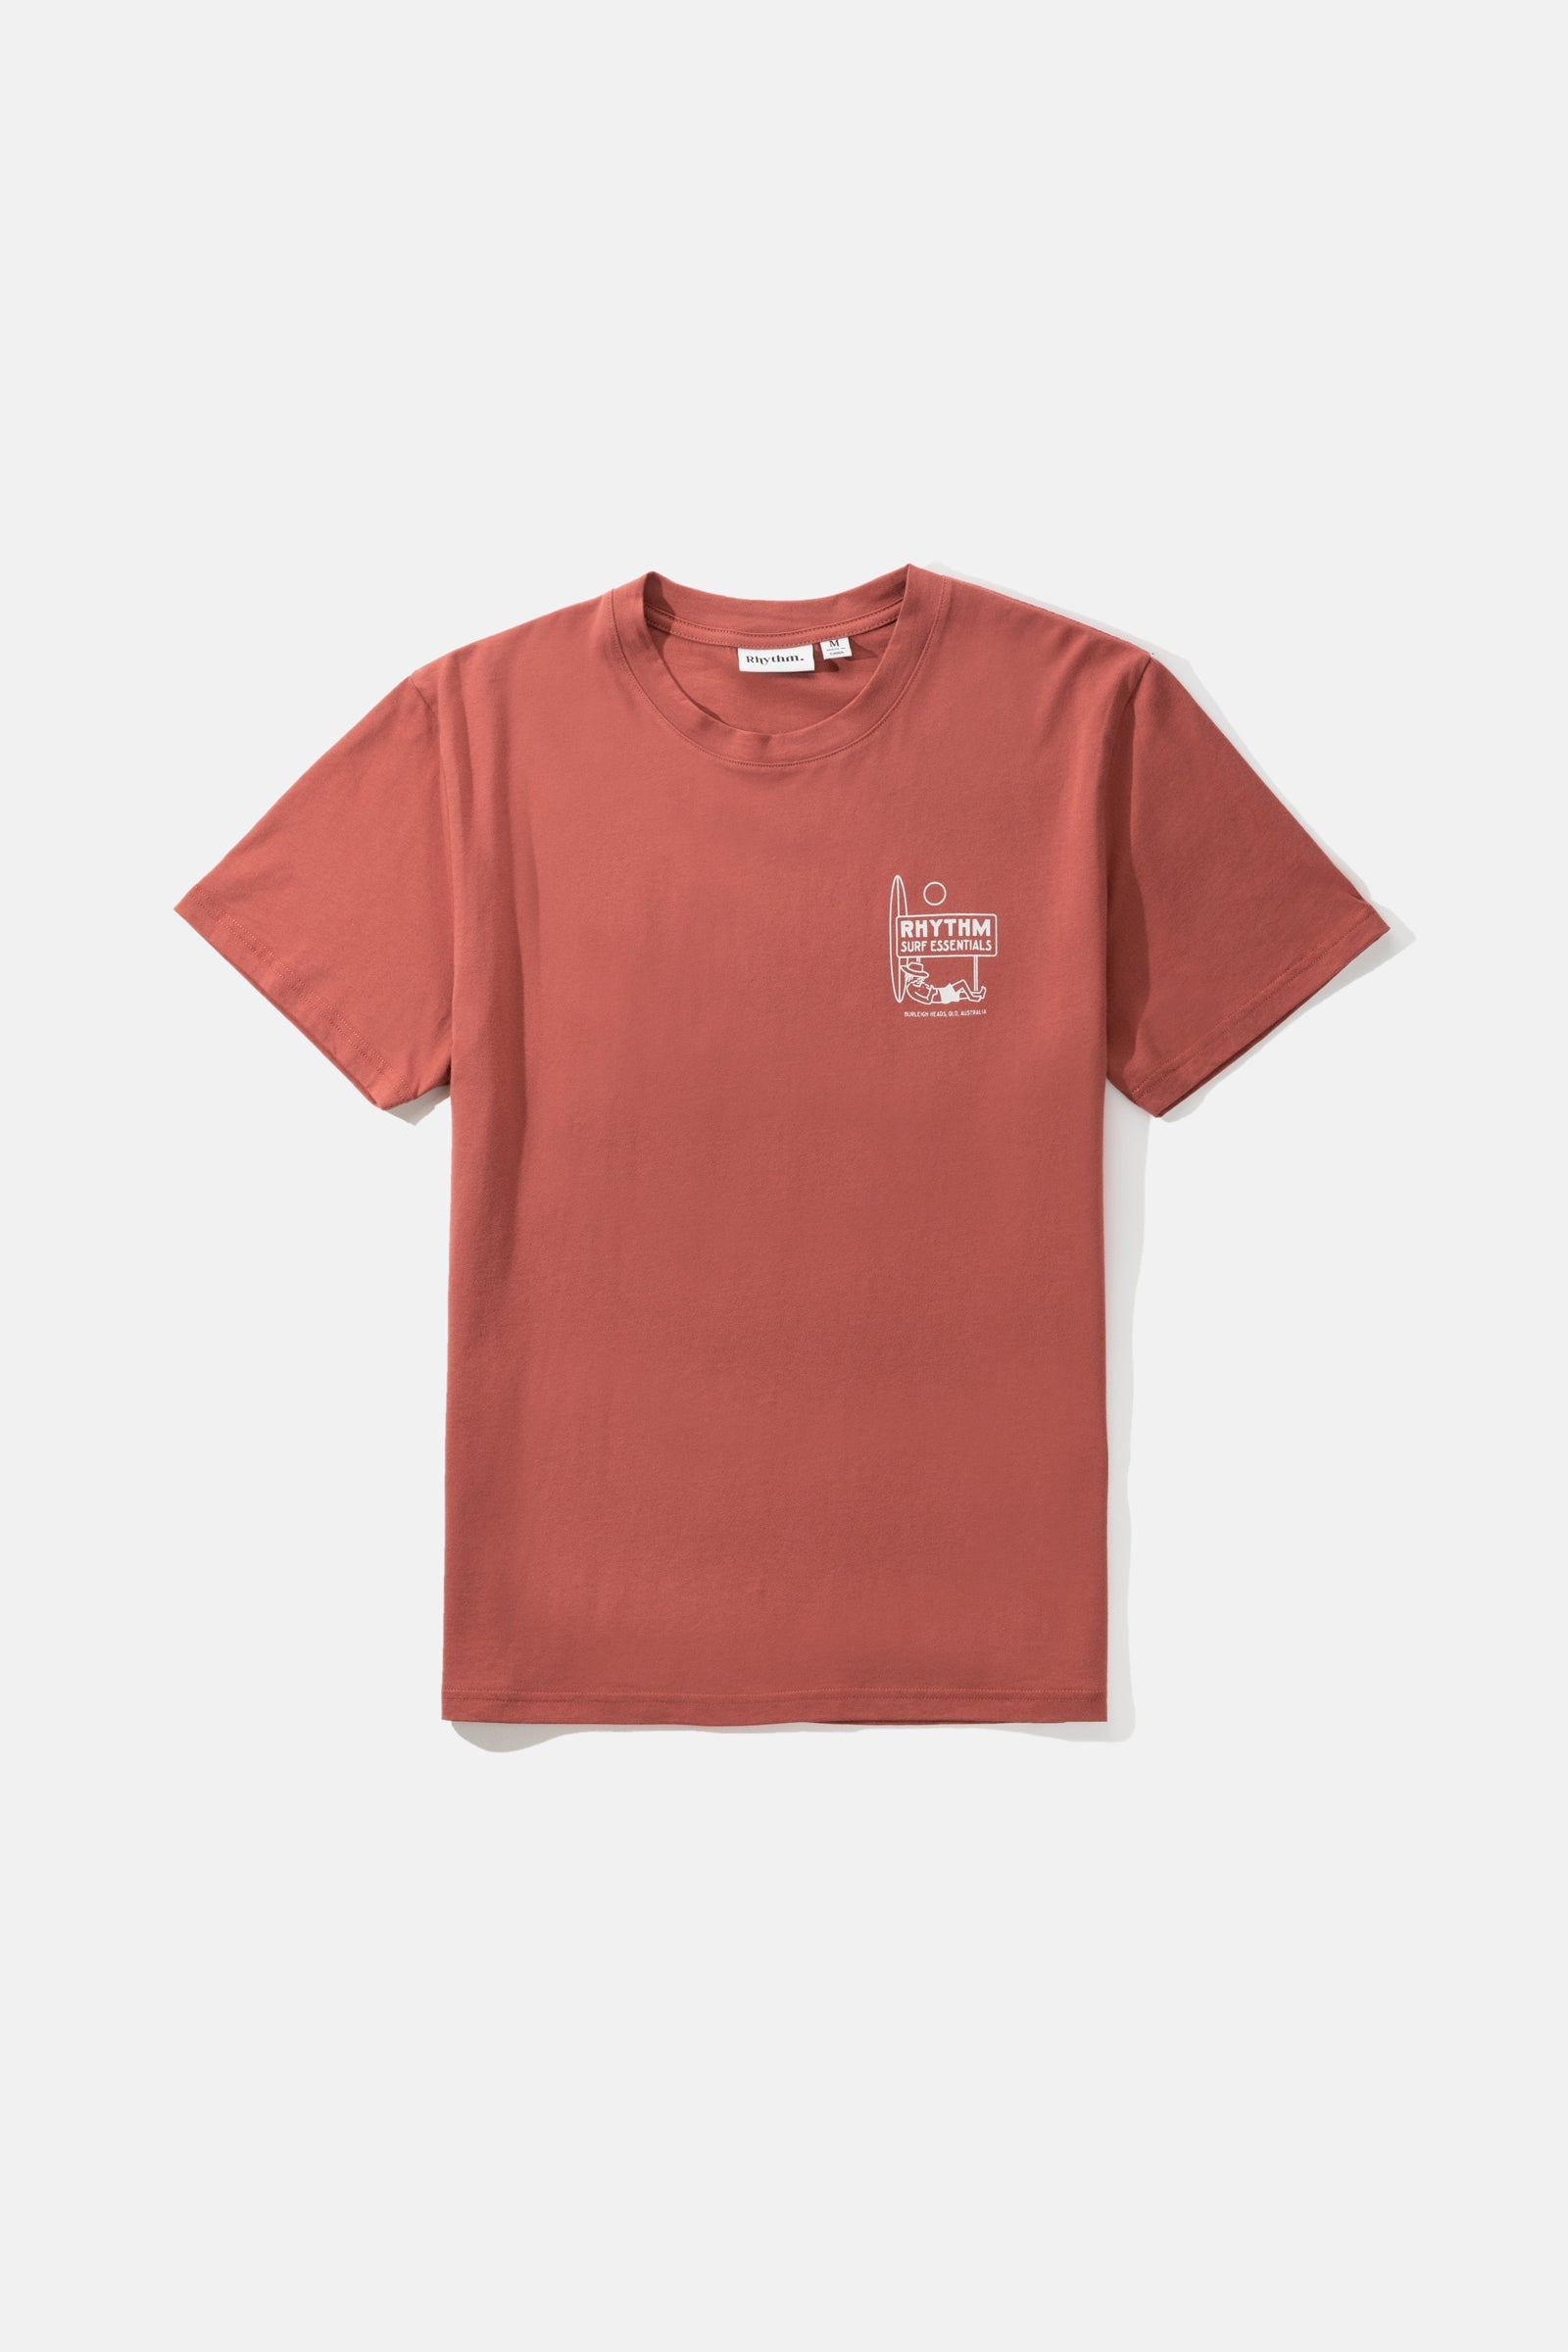 Slate Rhythm US T-Shirt Siesta – SS